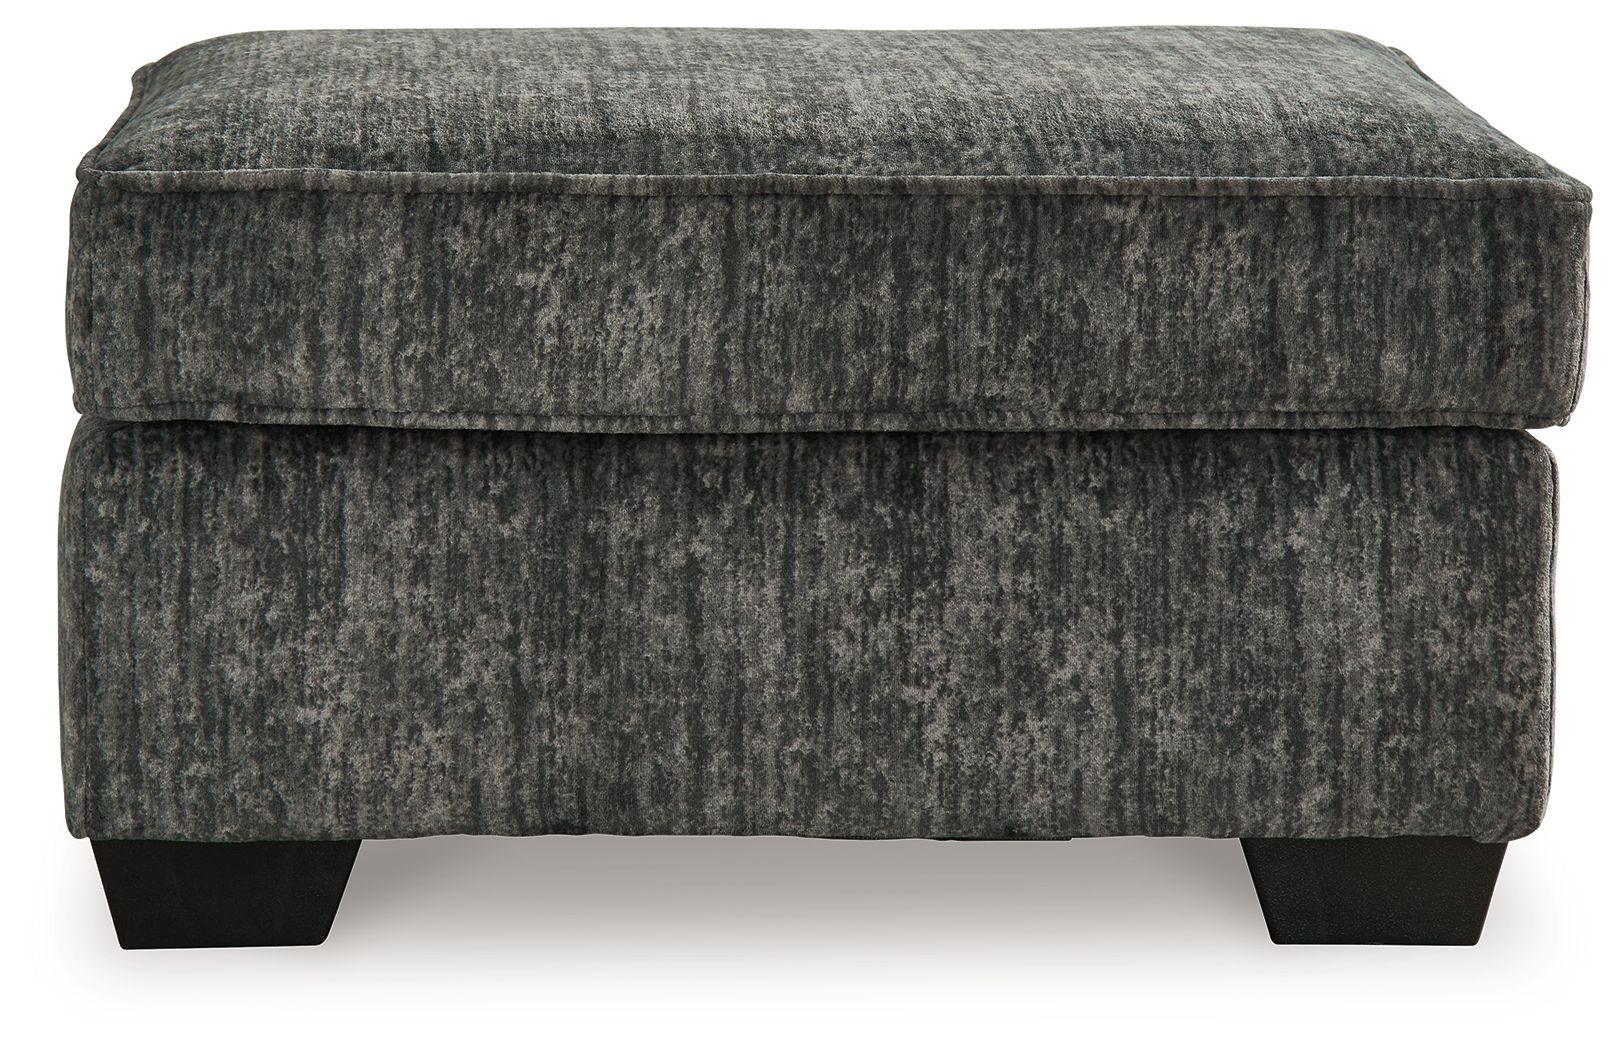 Signature Design by Ashley® - Lonoke - Ottoman - 5th Avenue Furniture